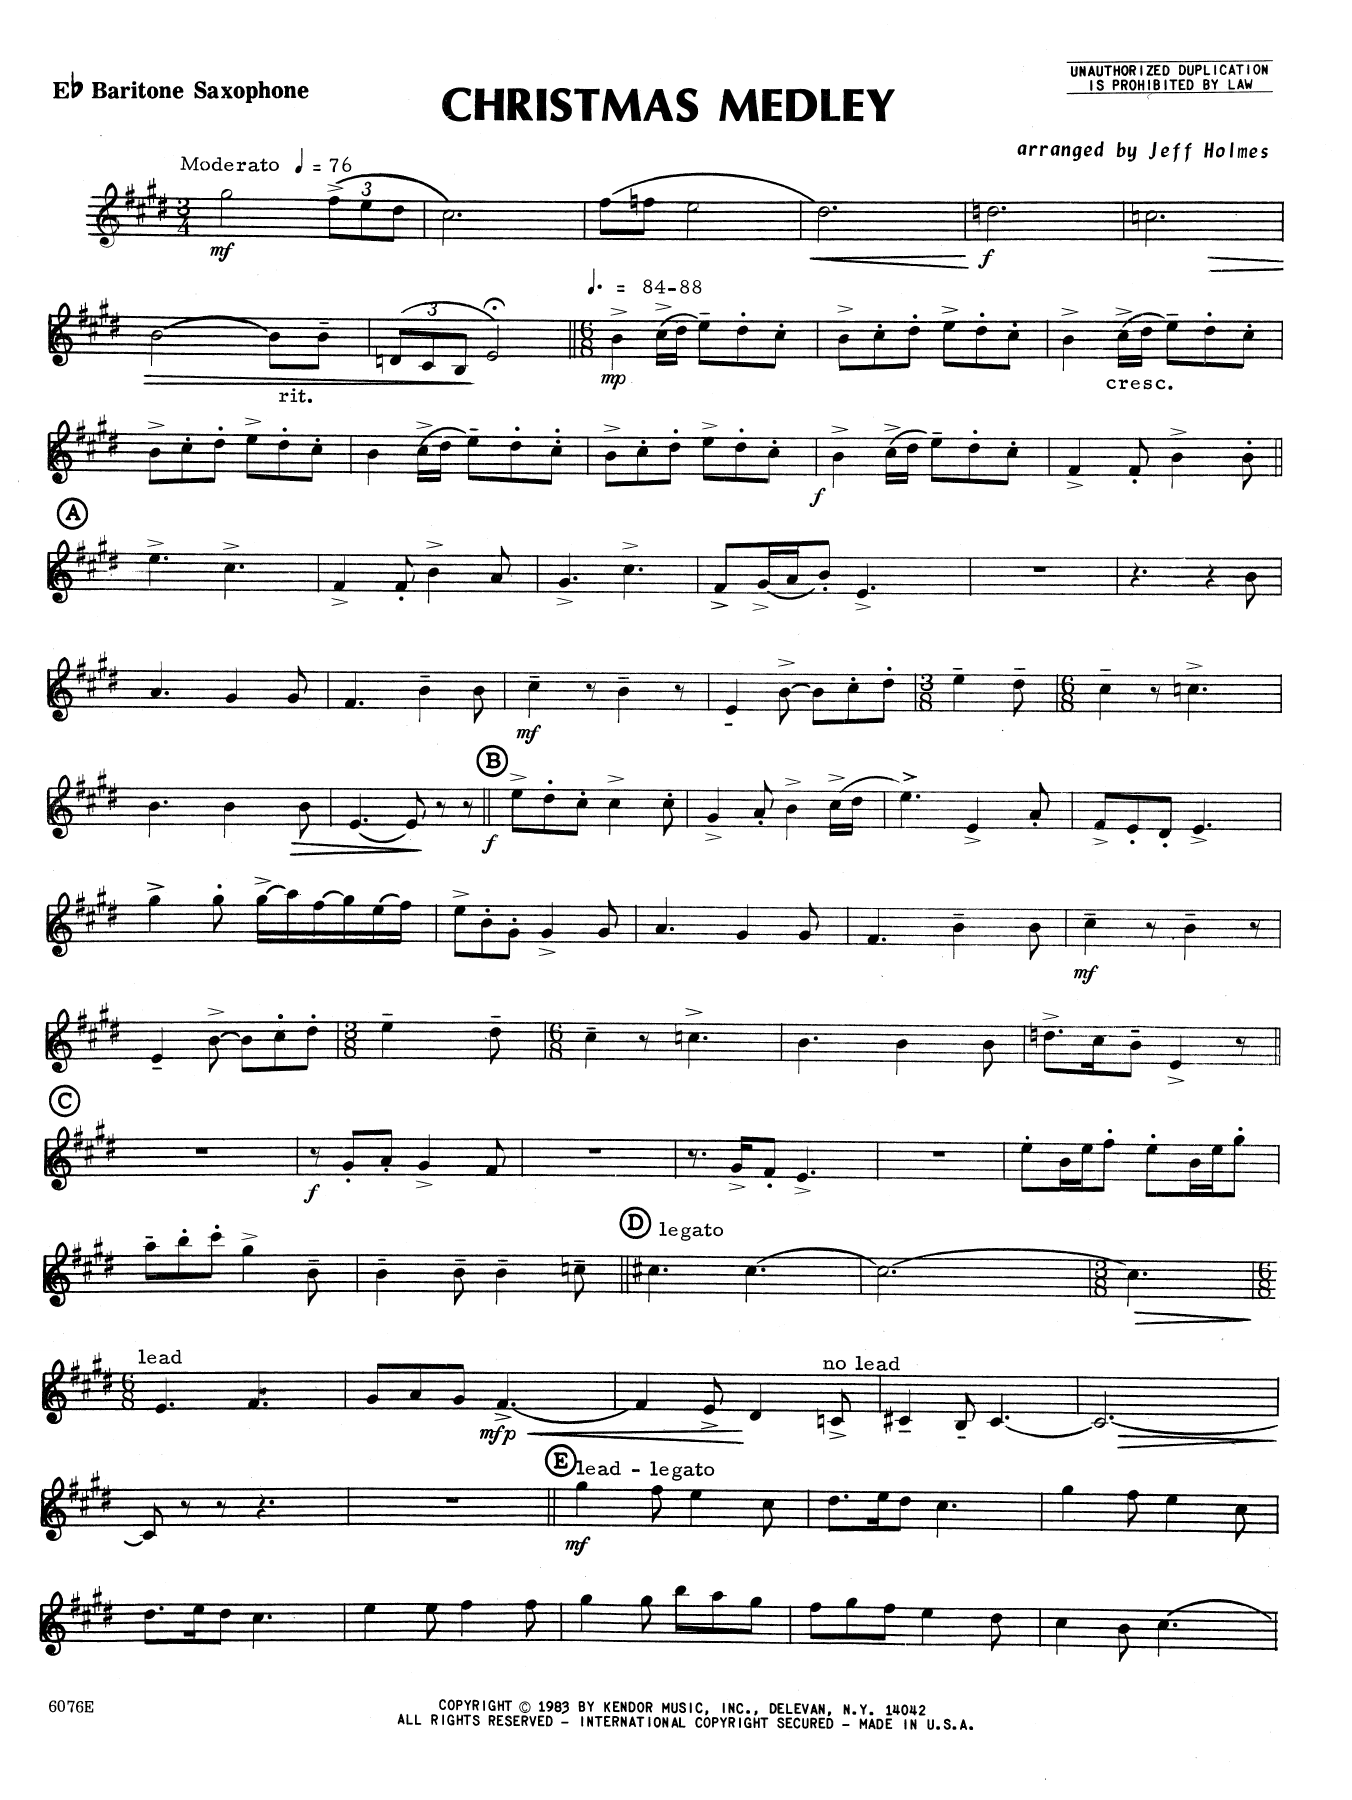 Download Holmes Christmas Medley - Eb Baritone Saxophon Sheet Music